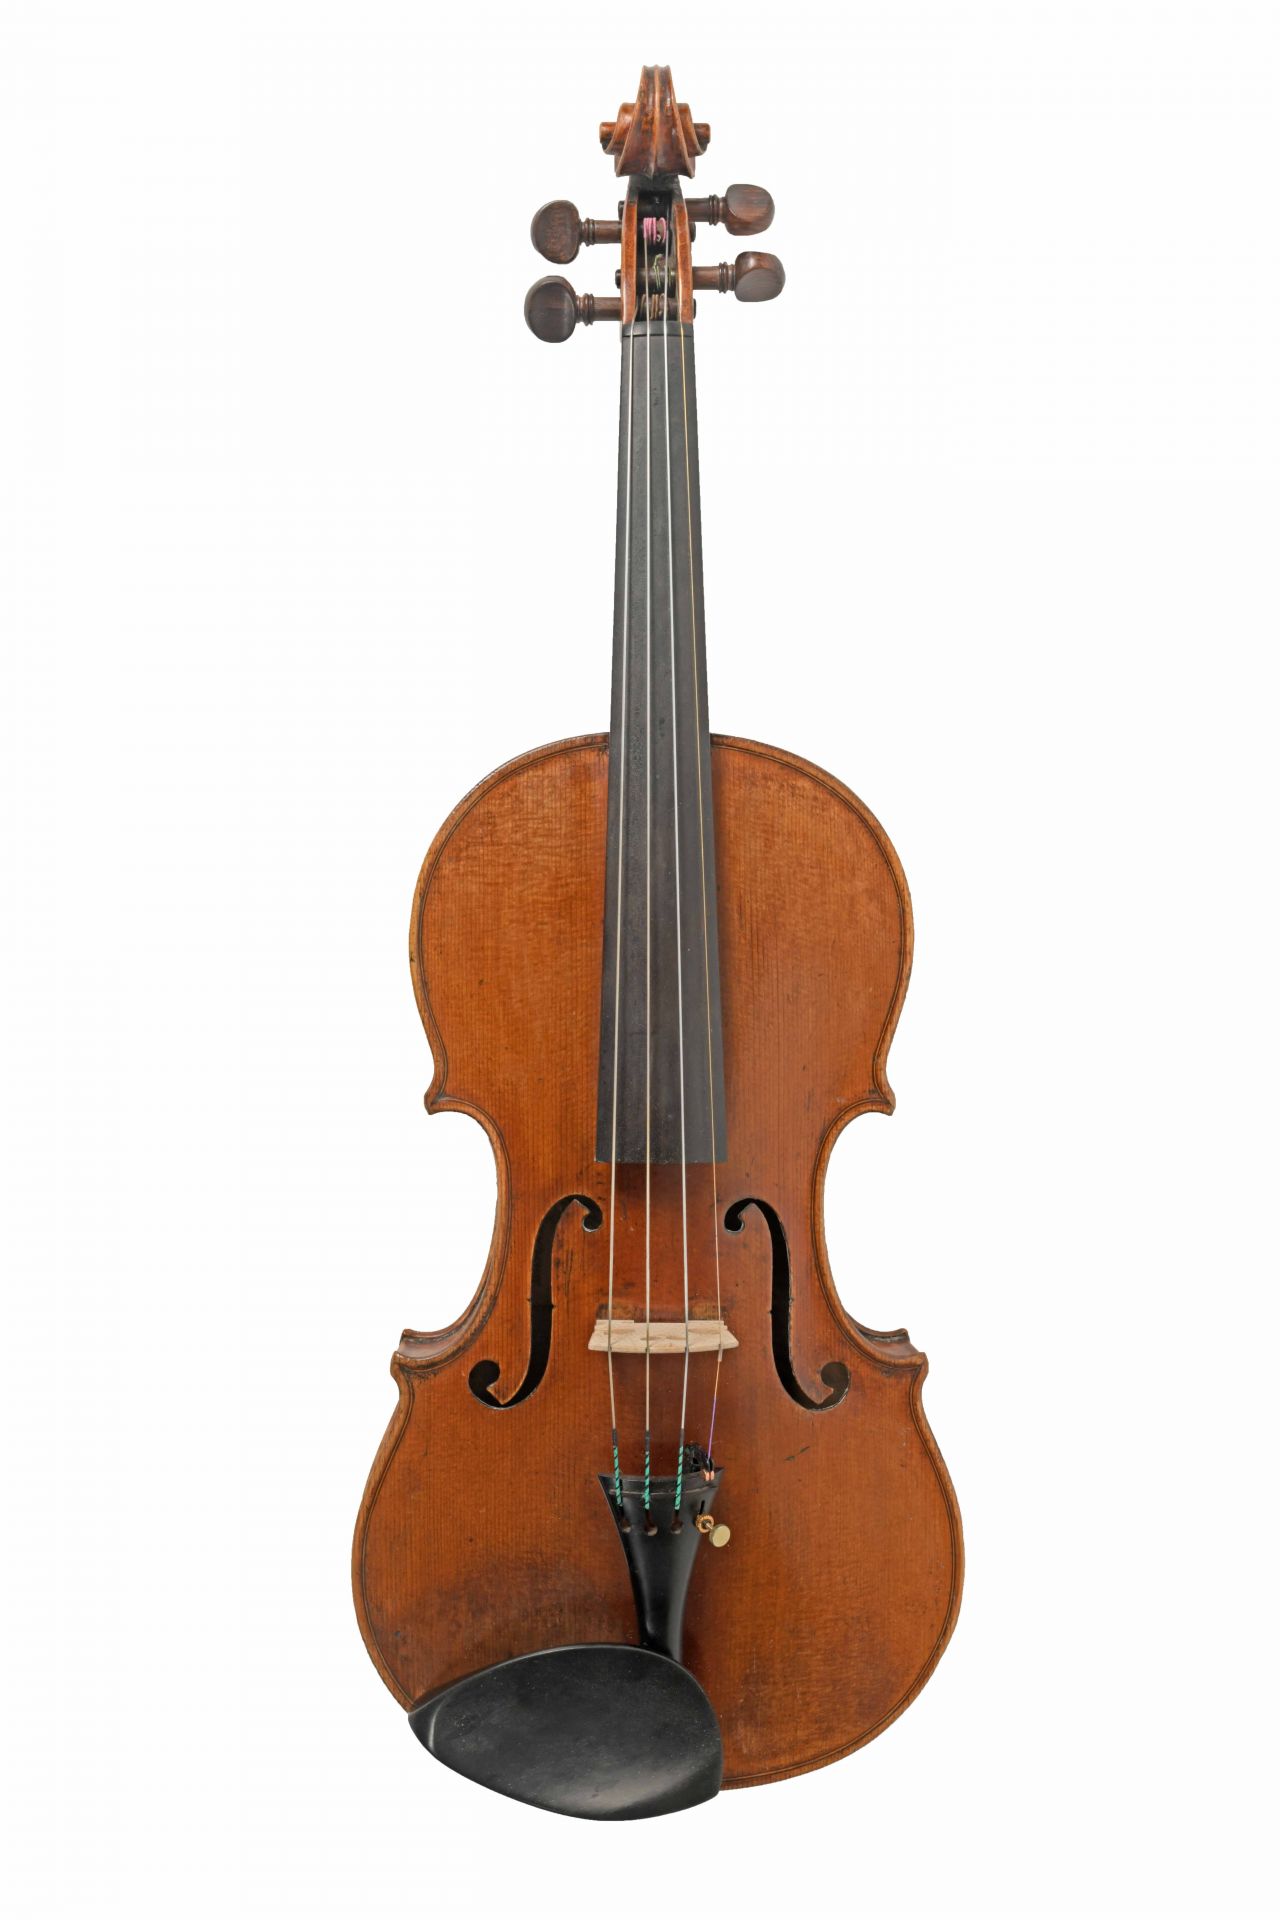 Devereux violin